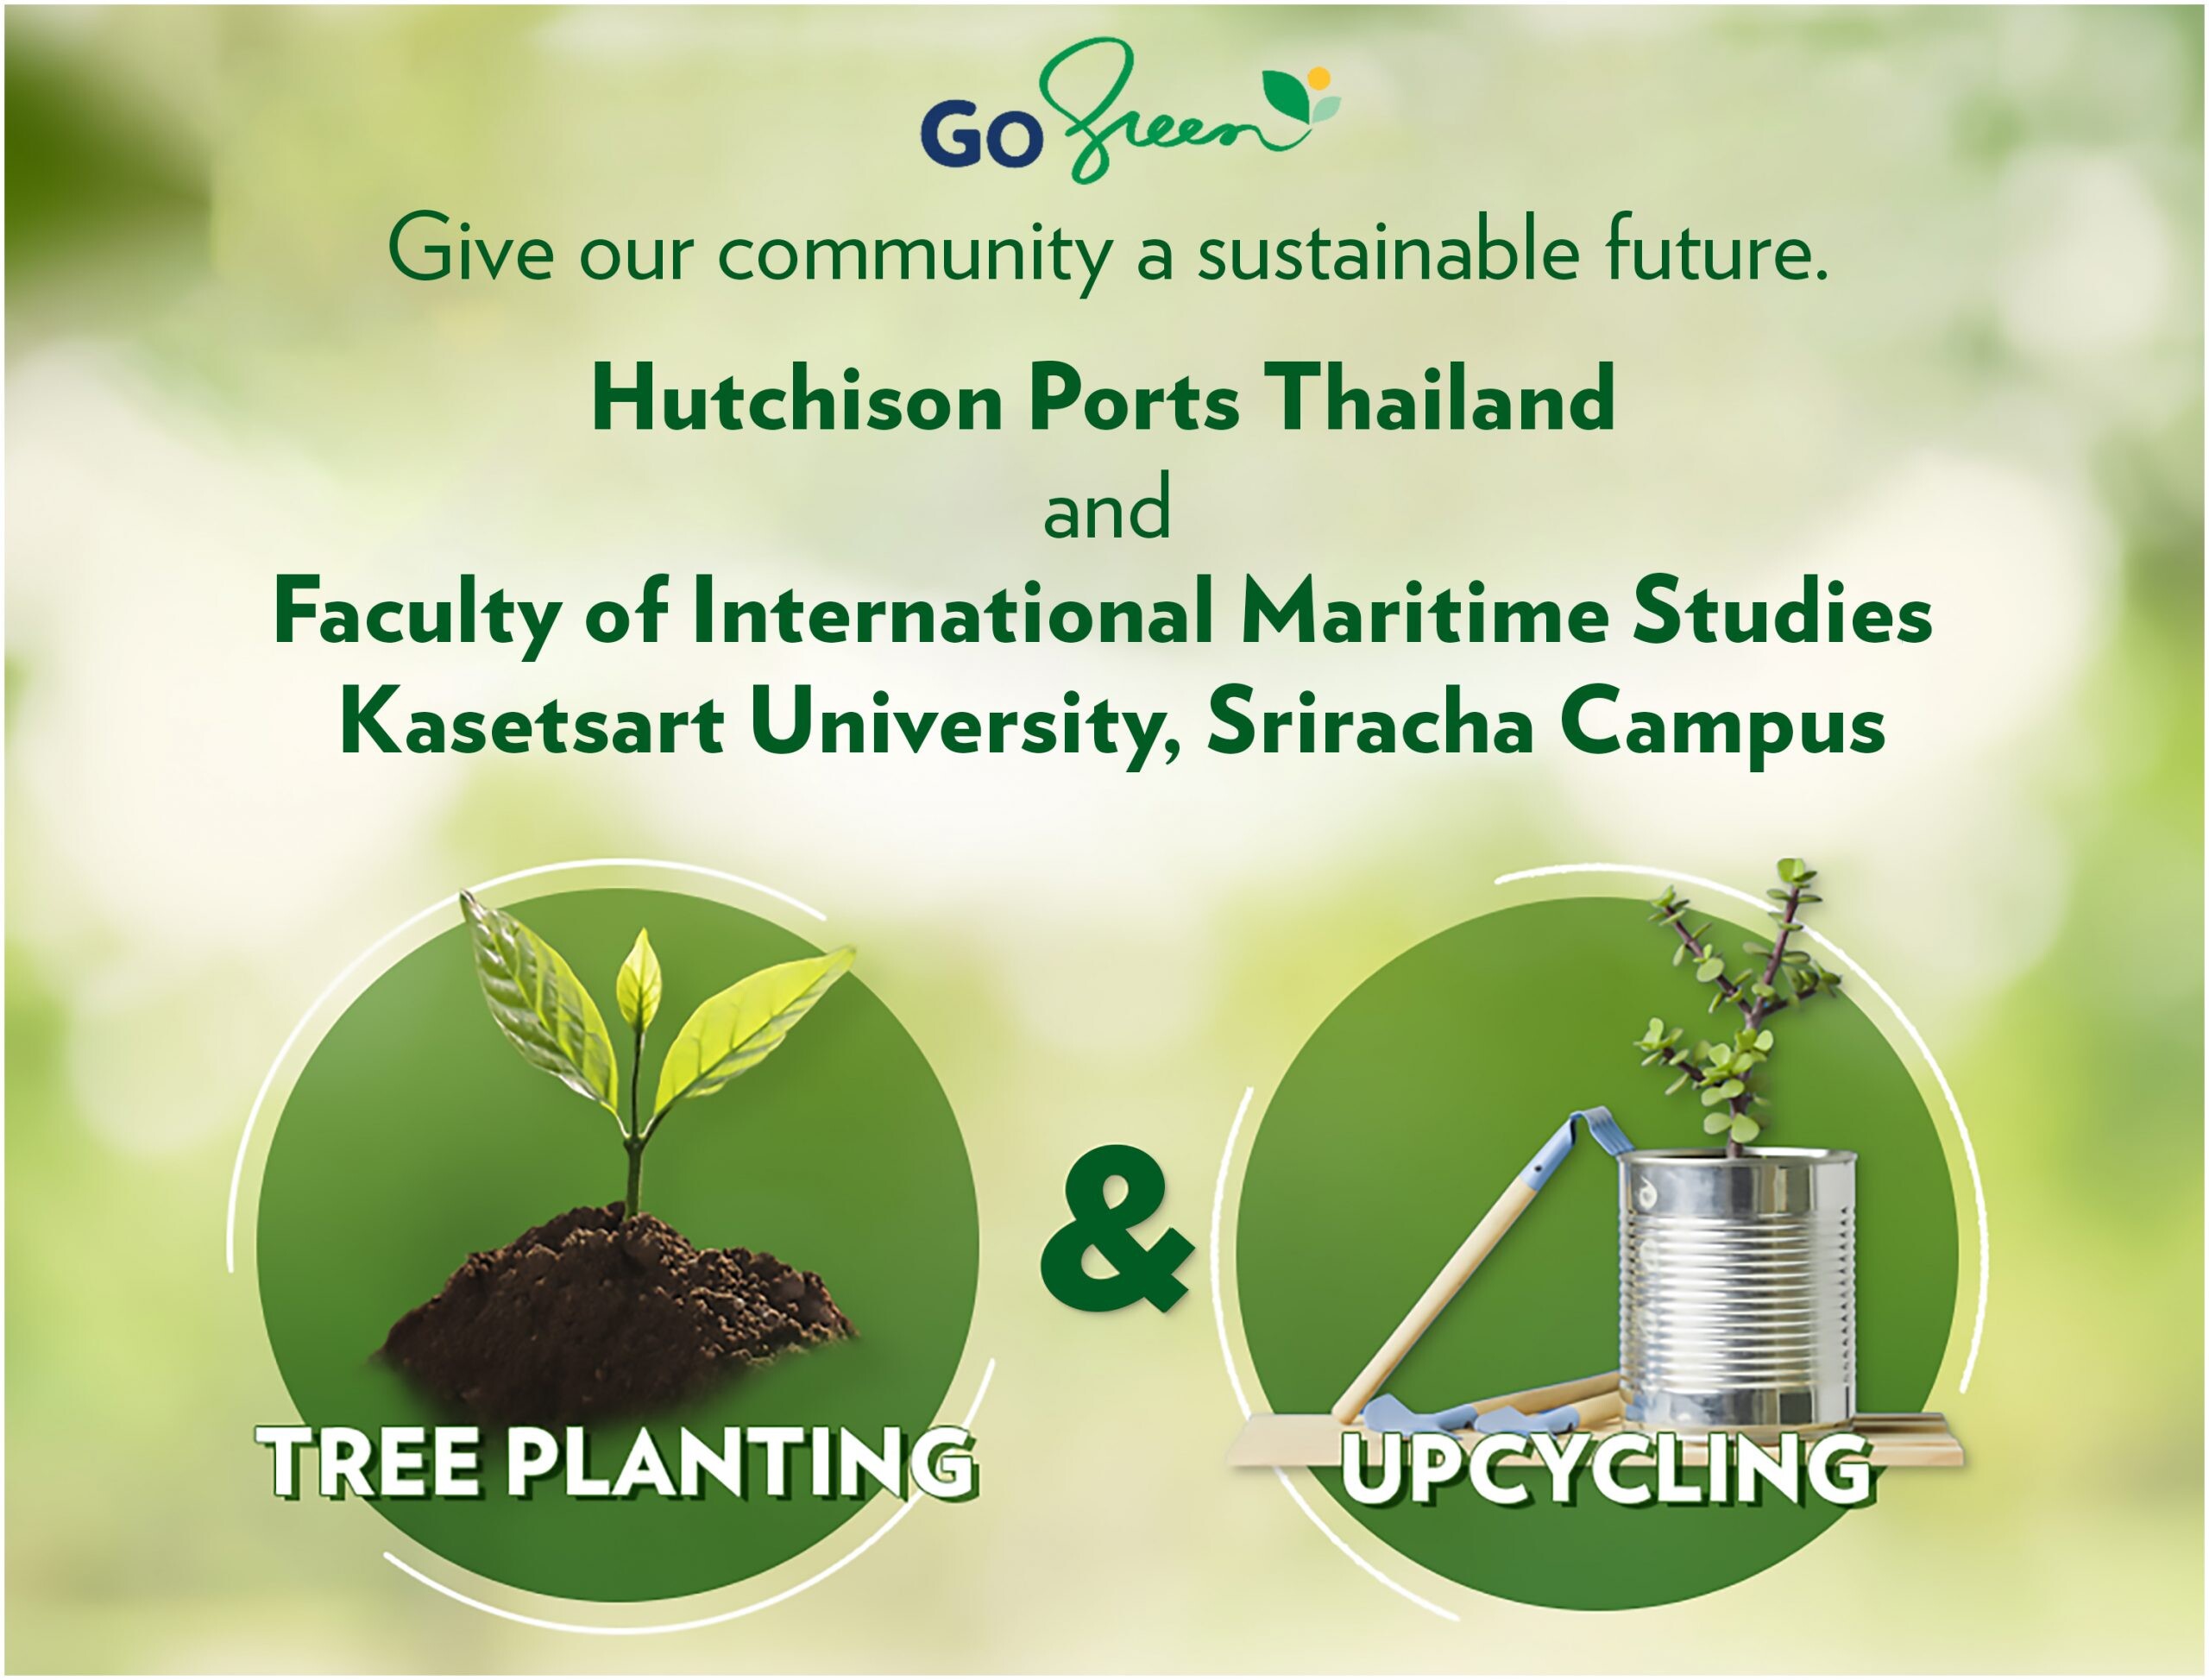 ฮัทชิสัน พอร์ท ประเทศไทย จับมือ มหาวิทยาลัยเกษตรศาสตร์ ในโครงการ Go Green มุ่งวางรากฐานธุรกิจเพื่อความยั่งยืนและเป็นมิตรกับสิ่งแวดล้อมให้เยาวชนไทย